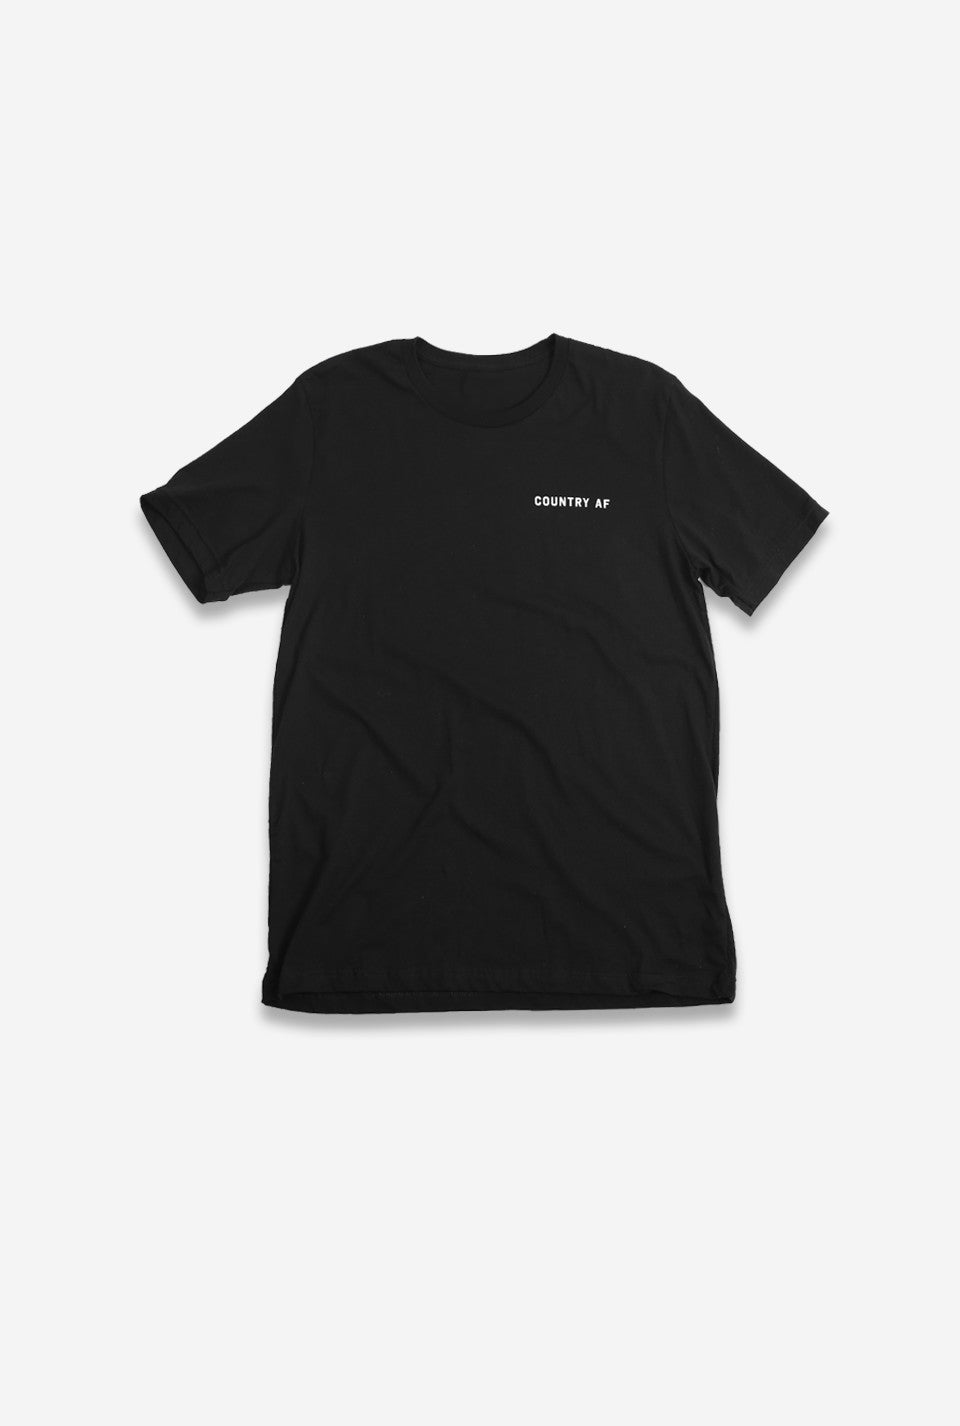 Country AF T-Shirt - Black